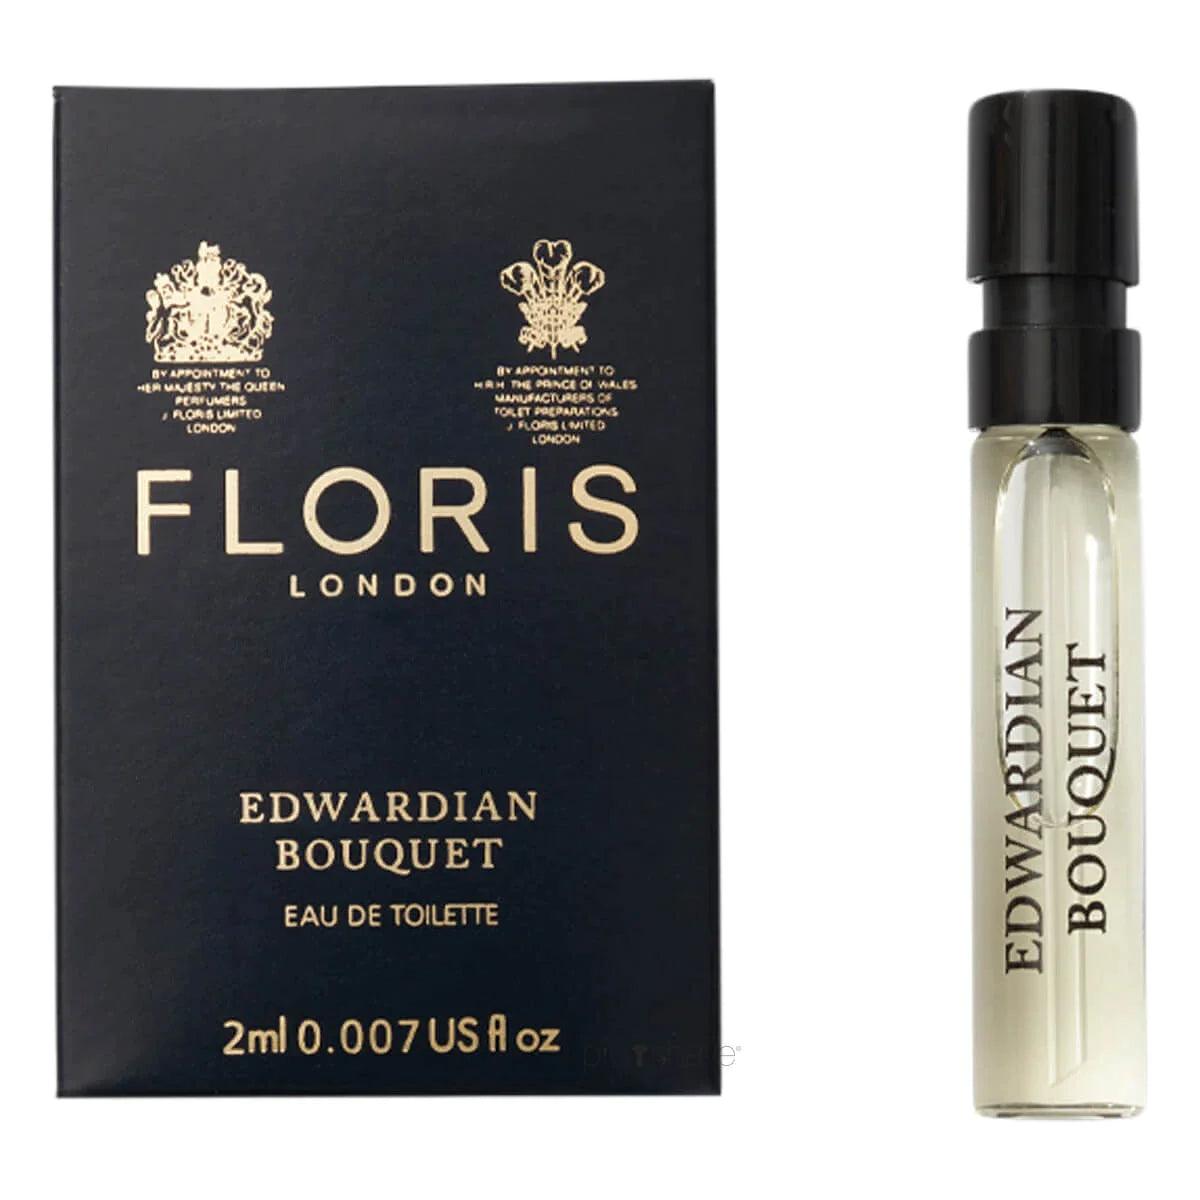 Floris Edwardian Bouquet, Eau de Toilette, 2 ml | Parfyme | Floris London | JK SHOP | JK Barber og herre frisør | Lavepriser | Best